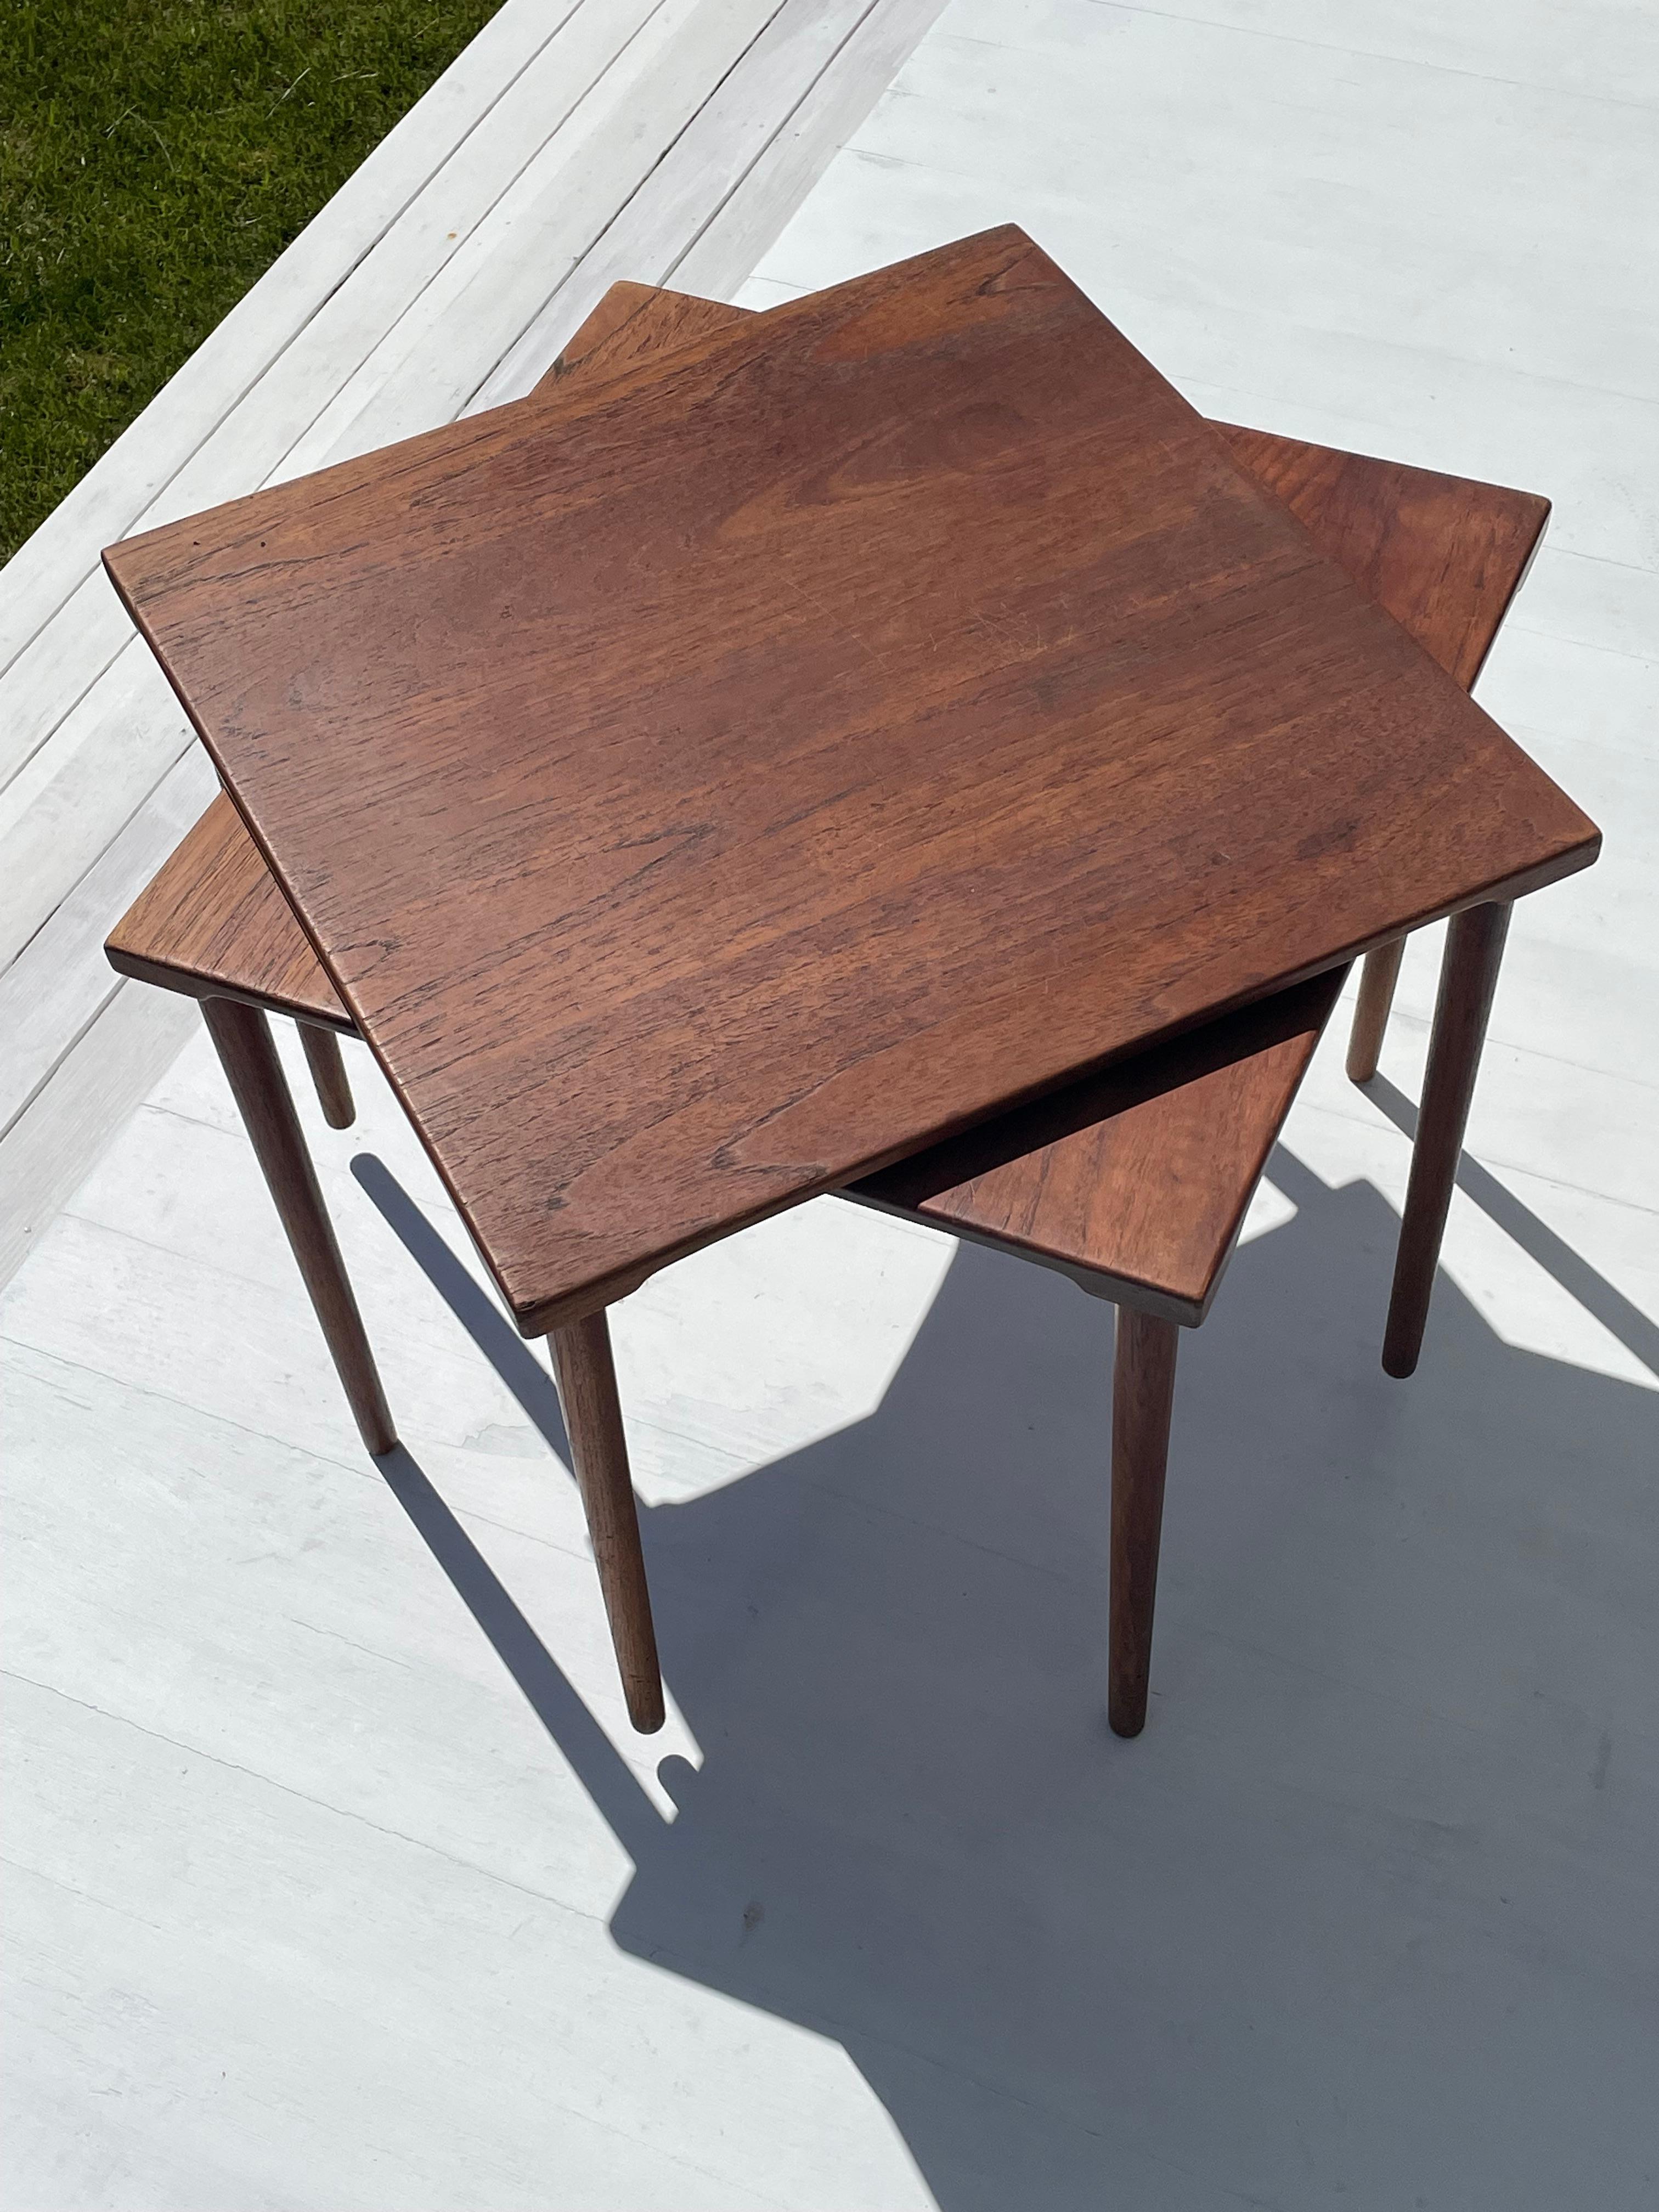 20th Century Pair of Danish Modern 1960s Teak Side Tables by Peter Hvidt for John Stuart Inc For Sale